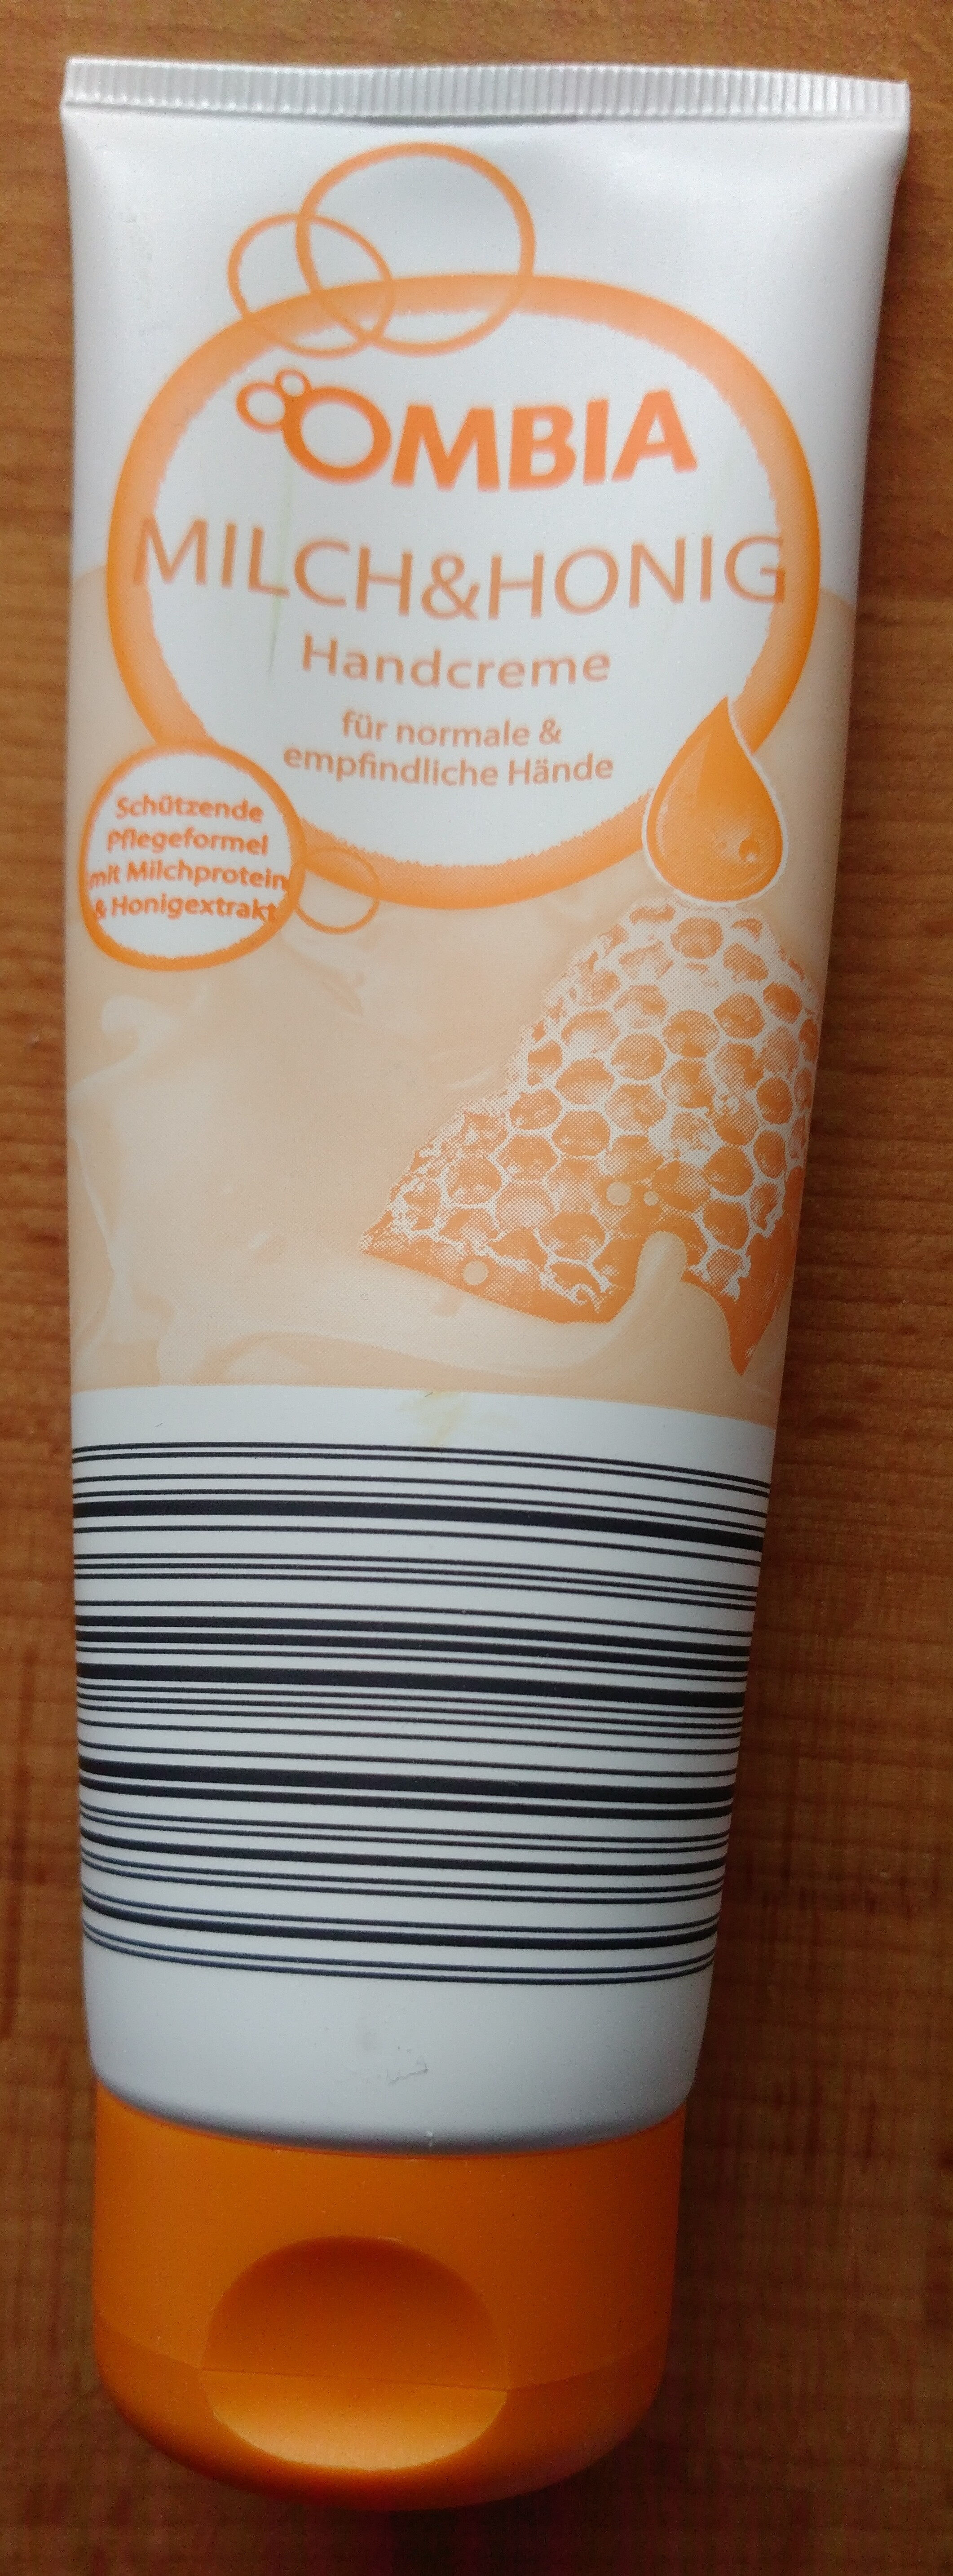 Milch & Honig Handcreme - Product - de